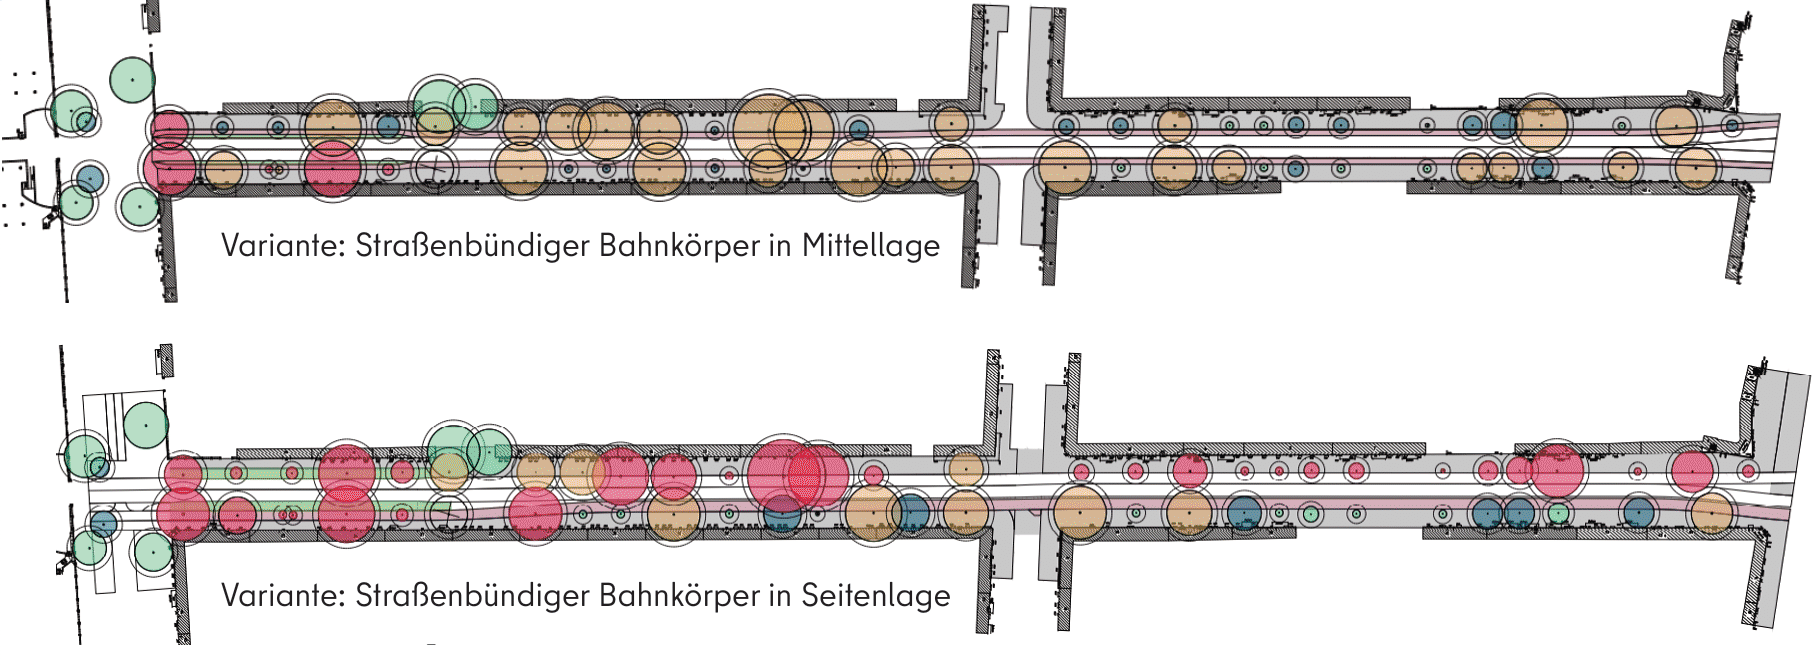 Diese Abbildung zeigt eine schematische Gegenüberstellung von Mittellage und Seitenlage in der Baumstudie zur Falckensteinstraße